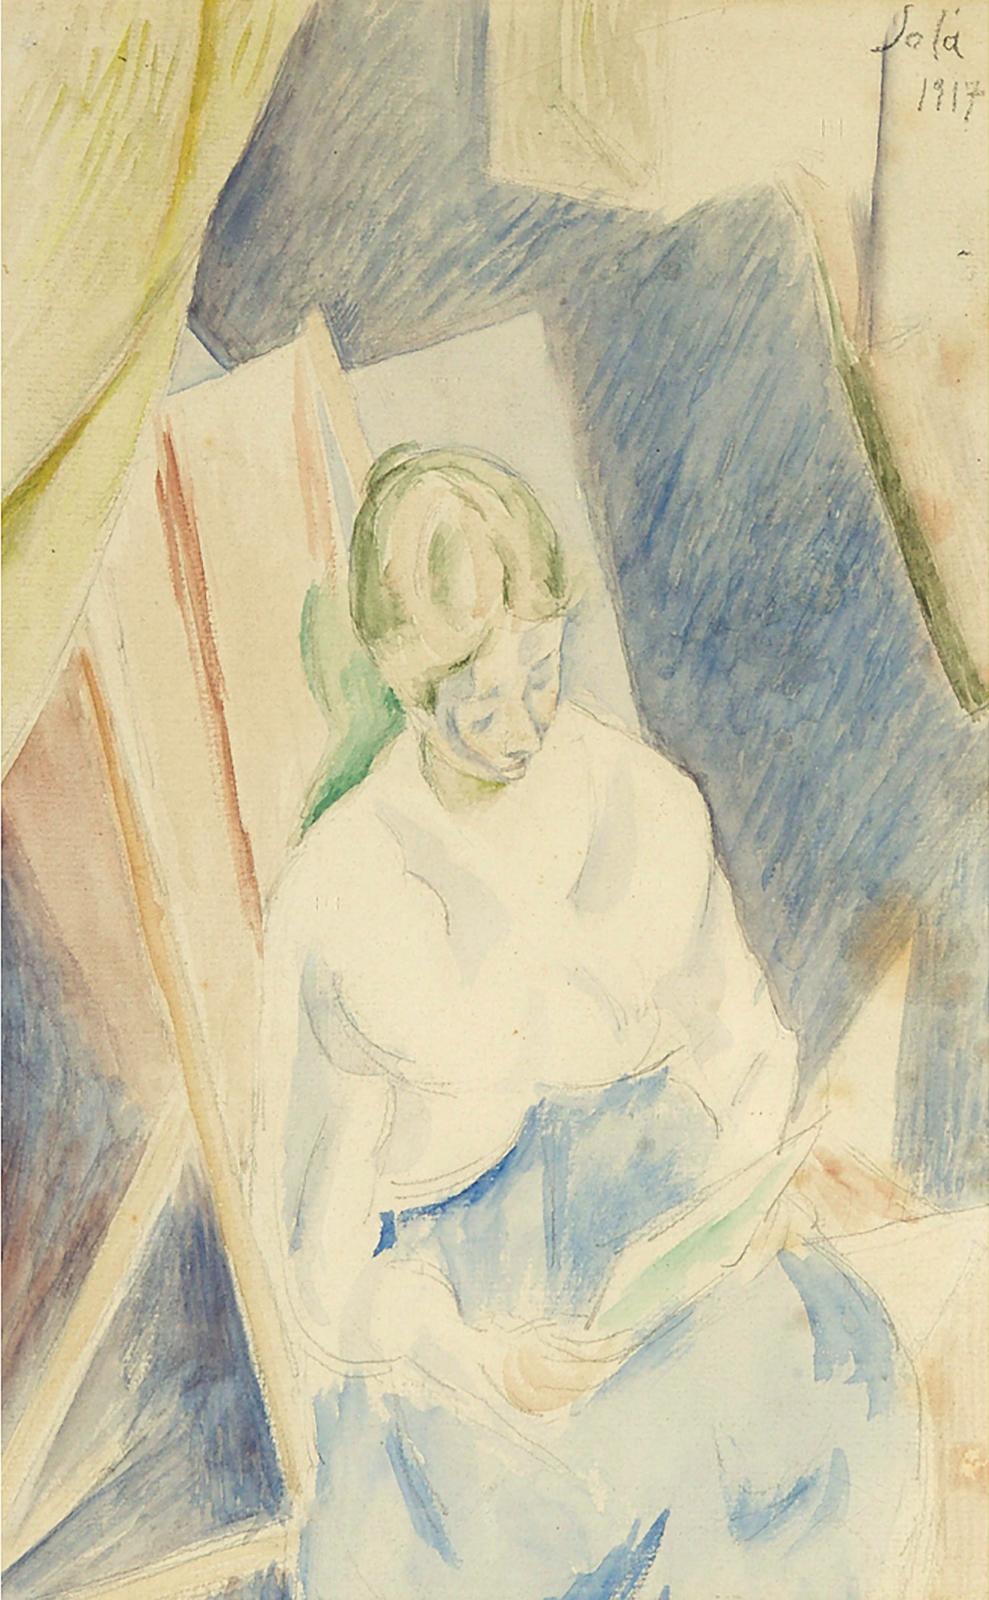 Léon Solà - Woman Reading, 1917